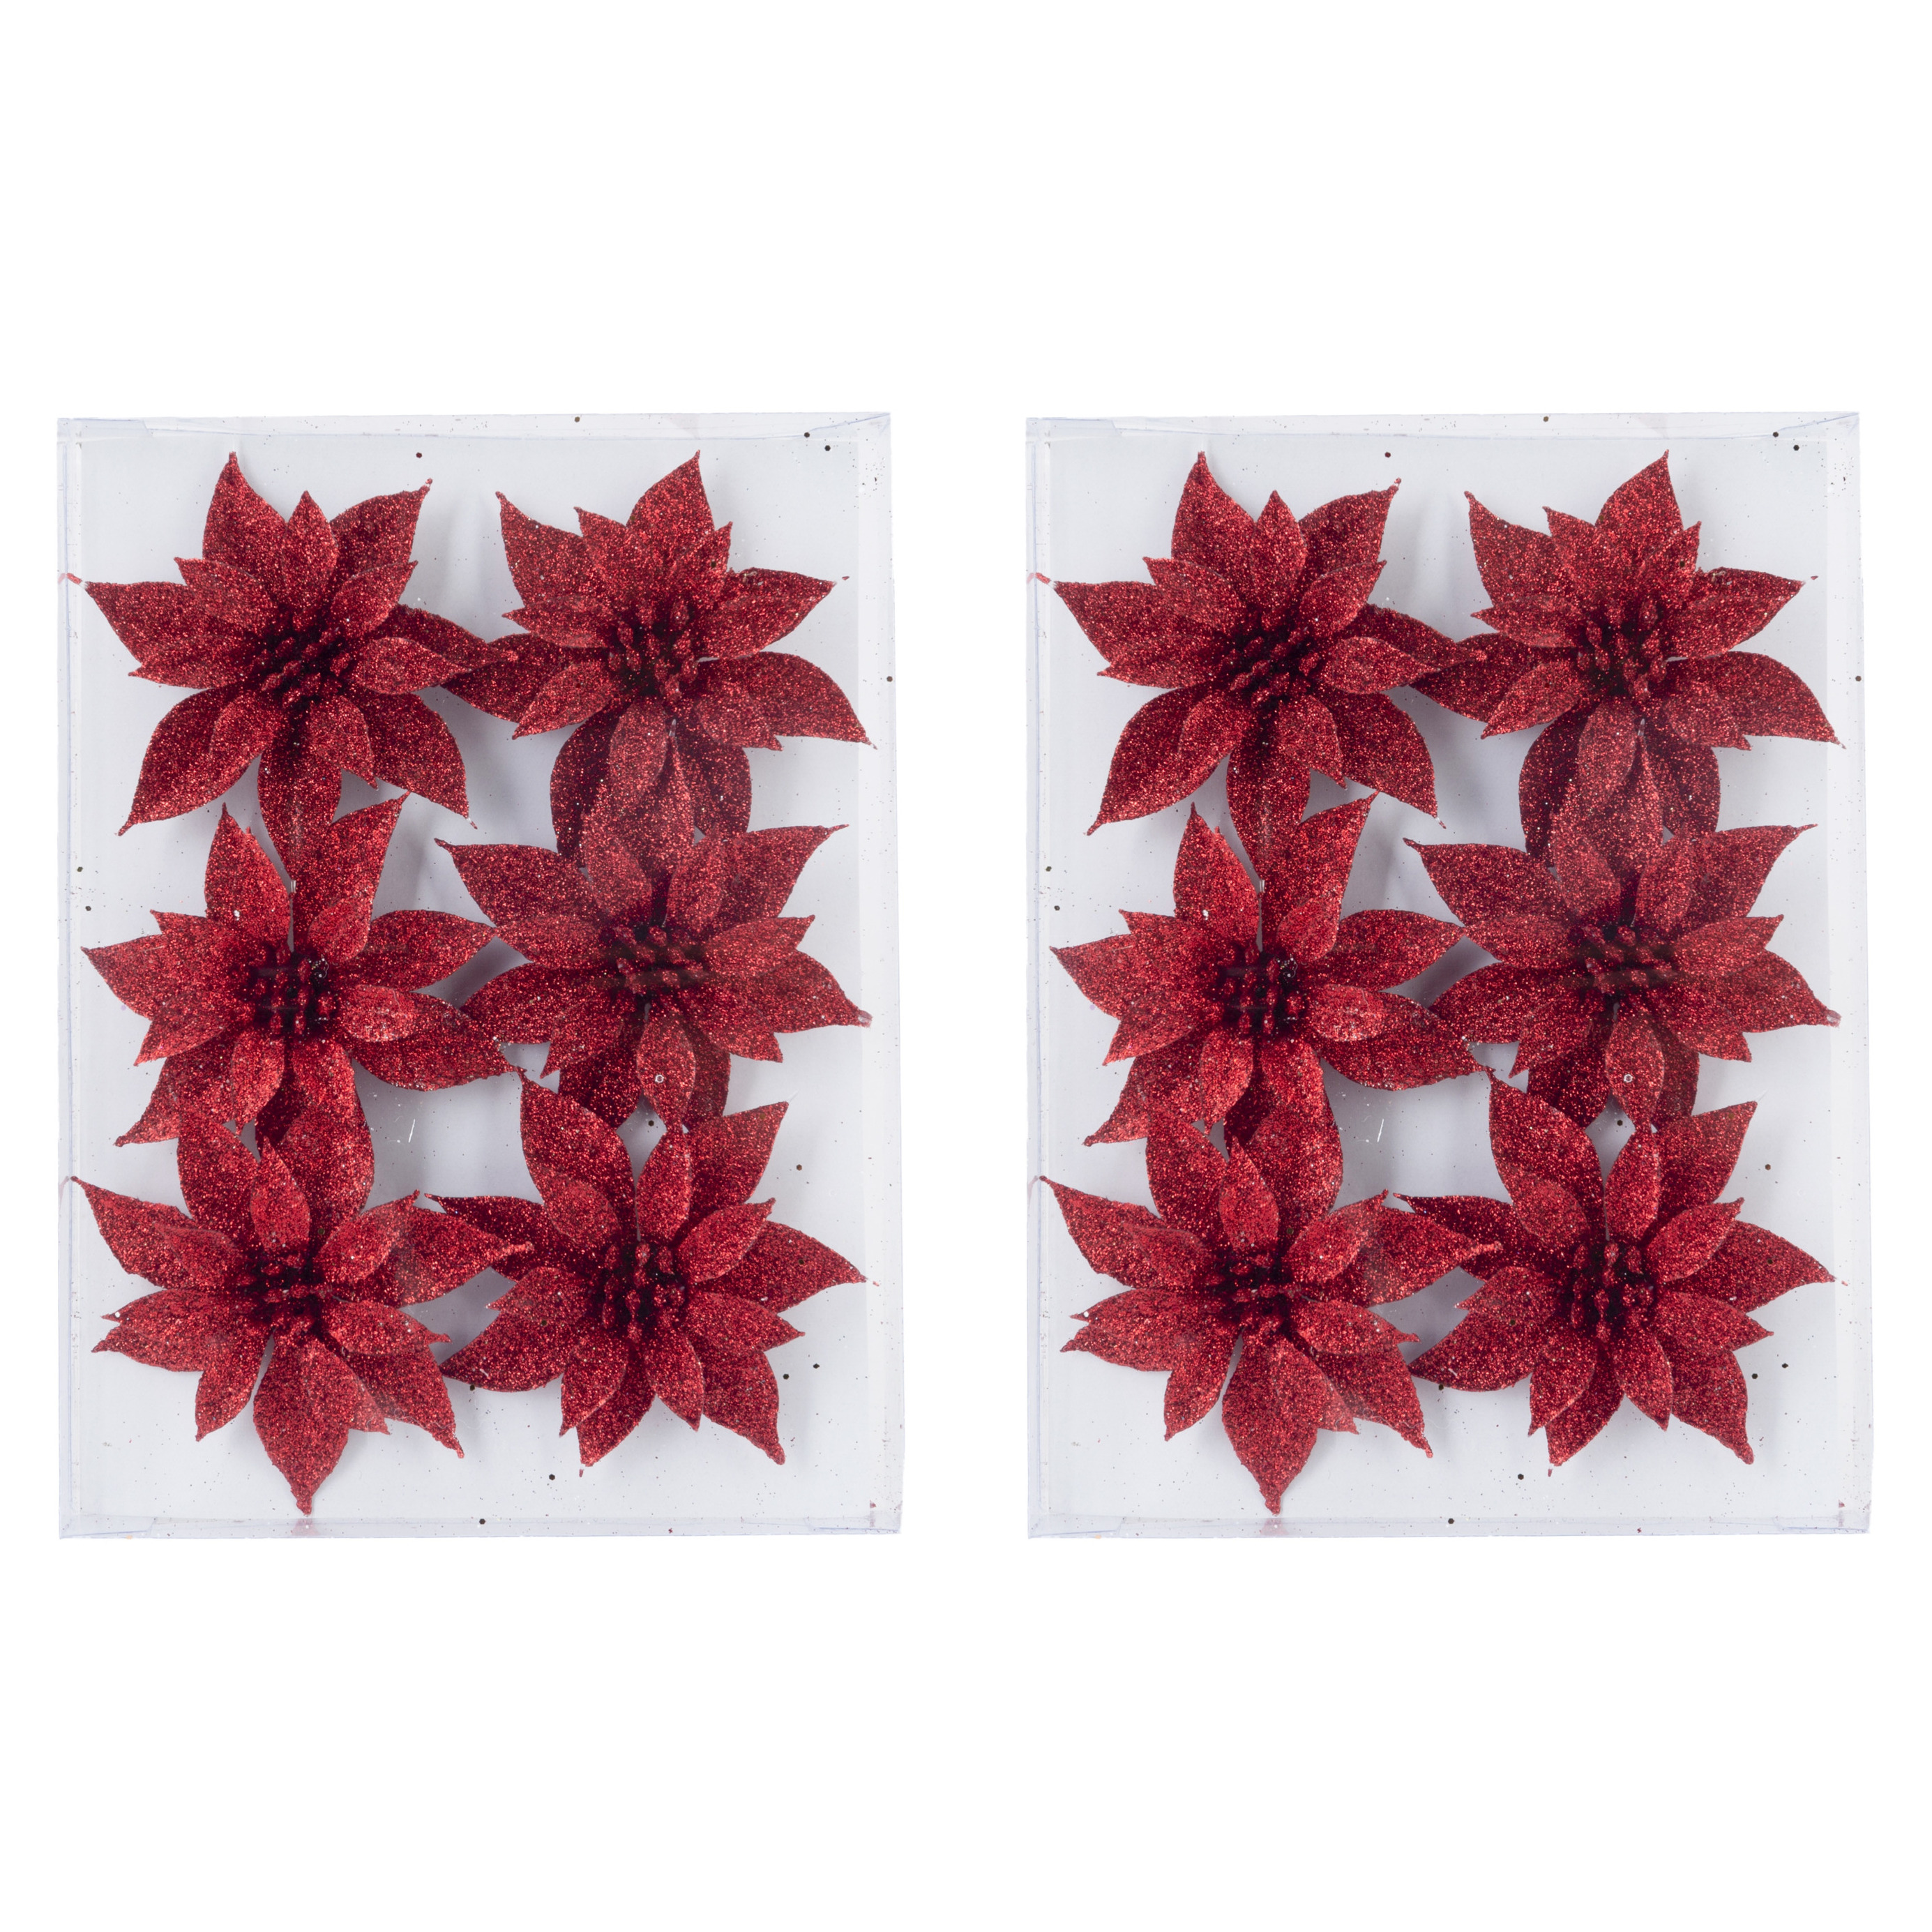 12x stuks decoratie bloemen rozen rood glitter op ijzerdraad 8 cm